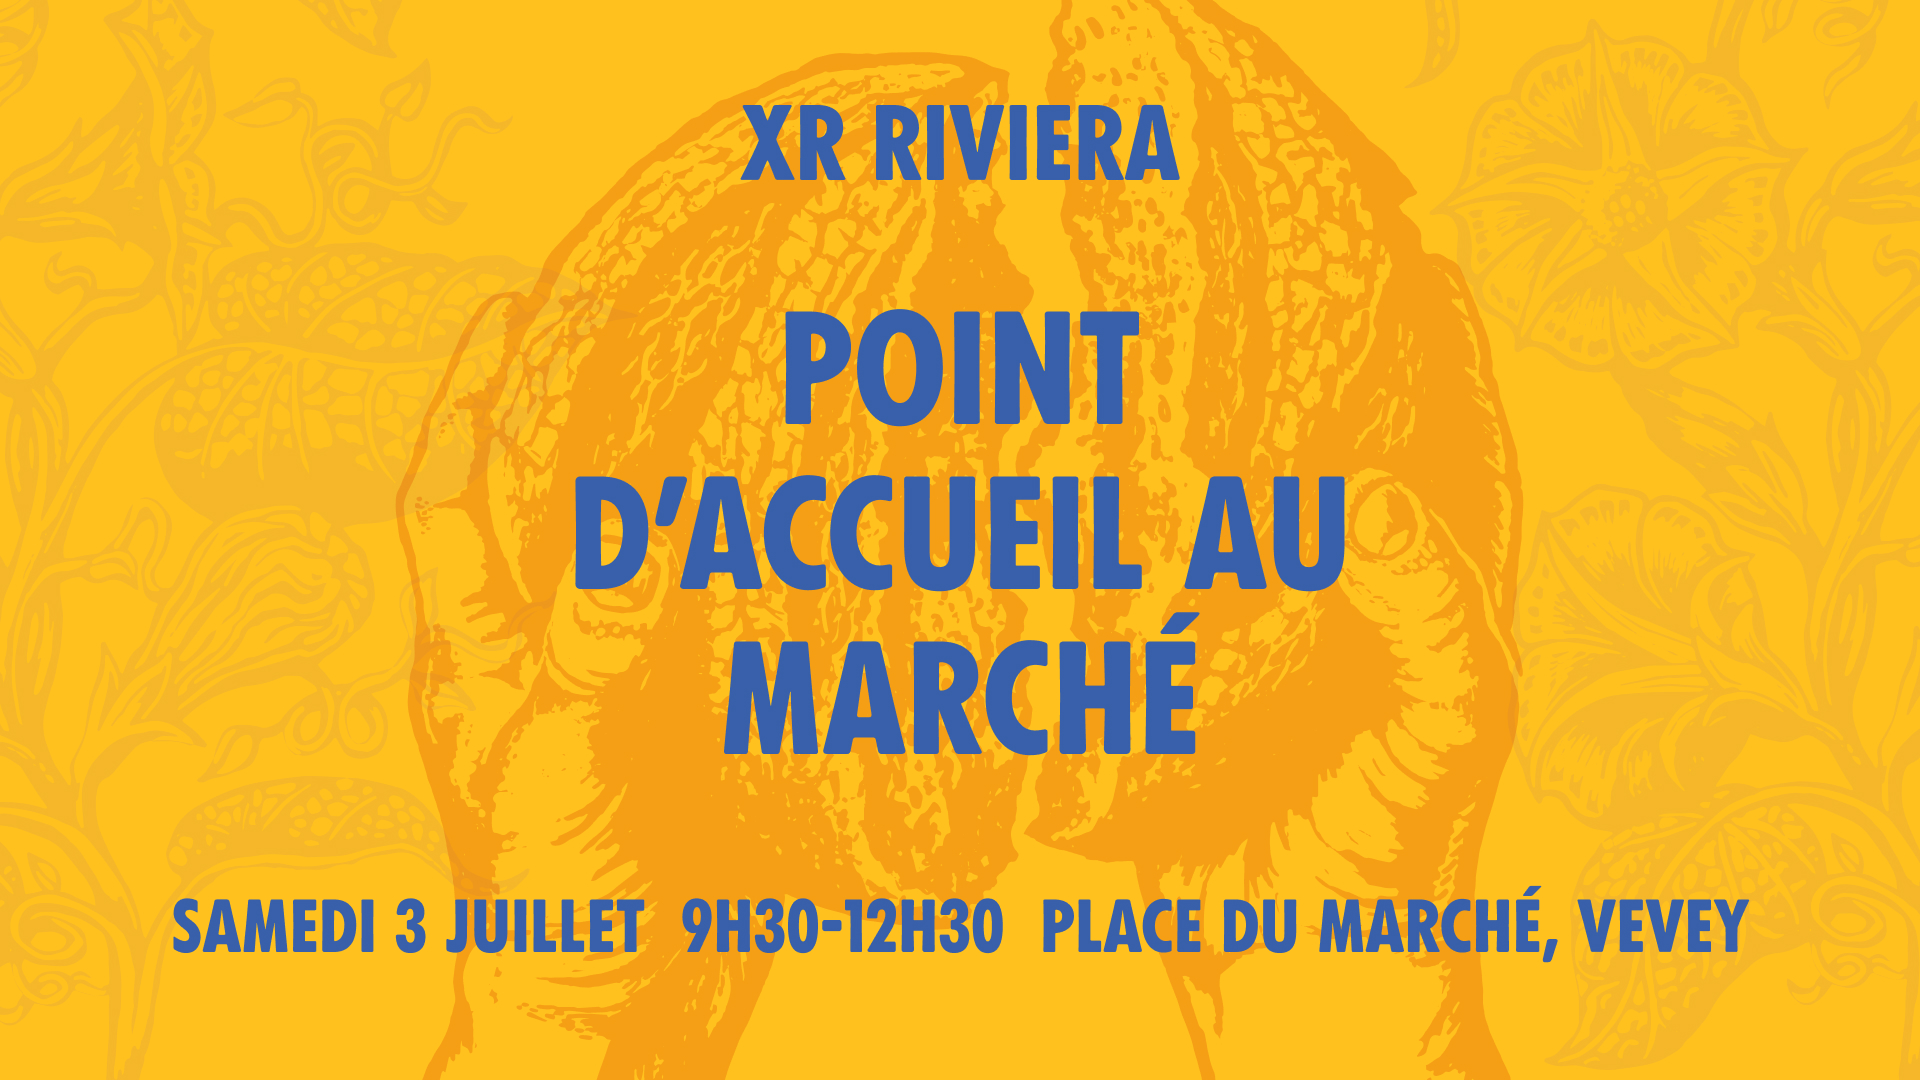 XR Riviera – Point d’accueil au marché